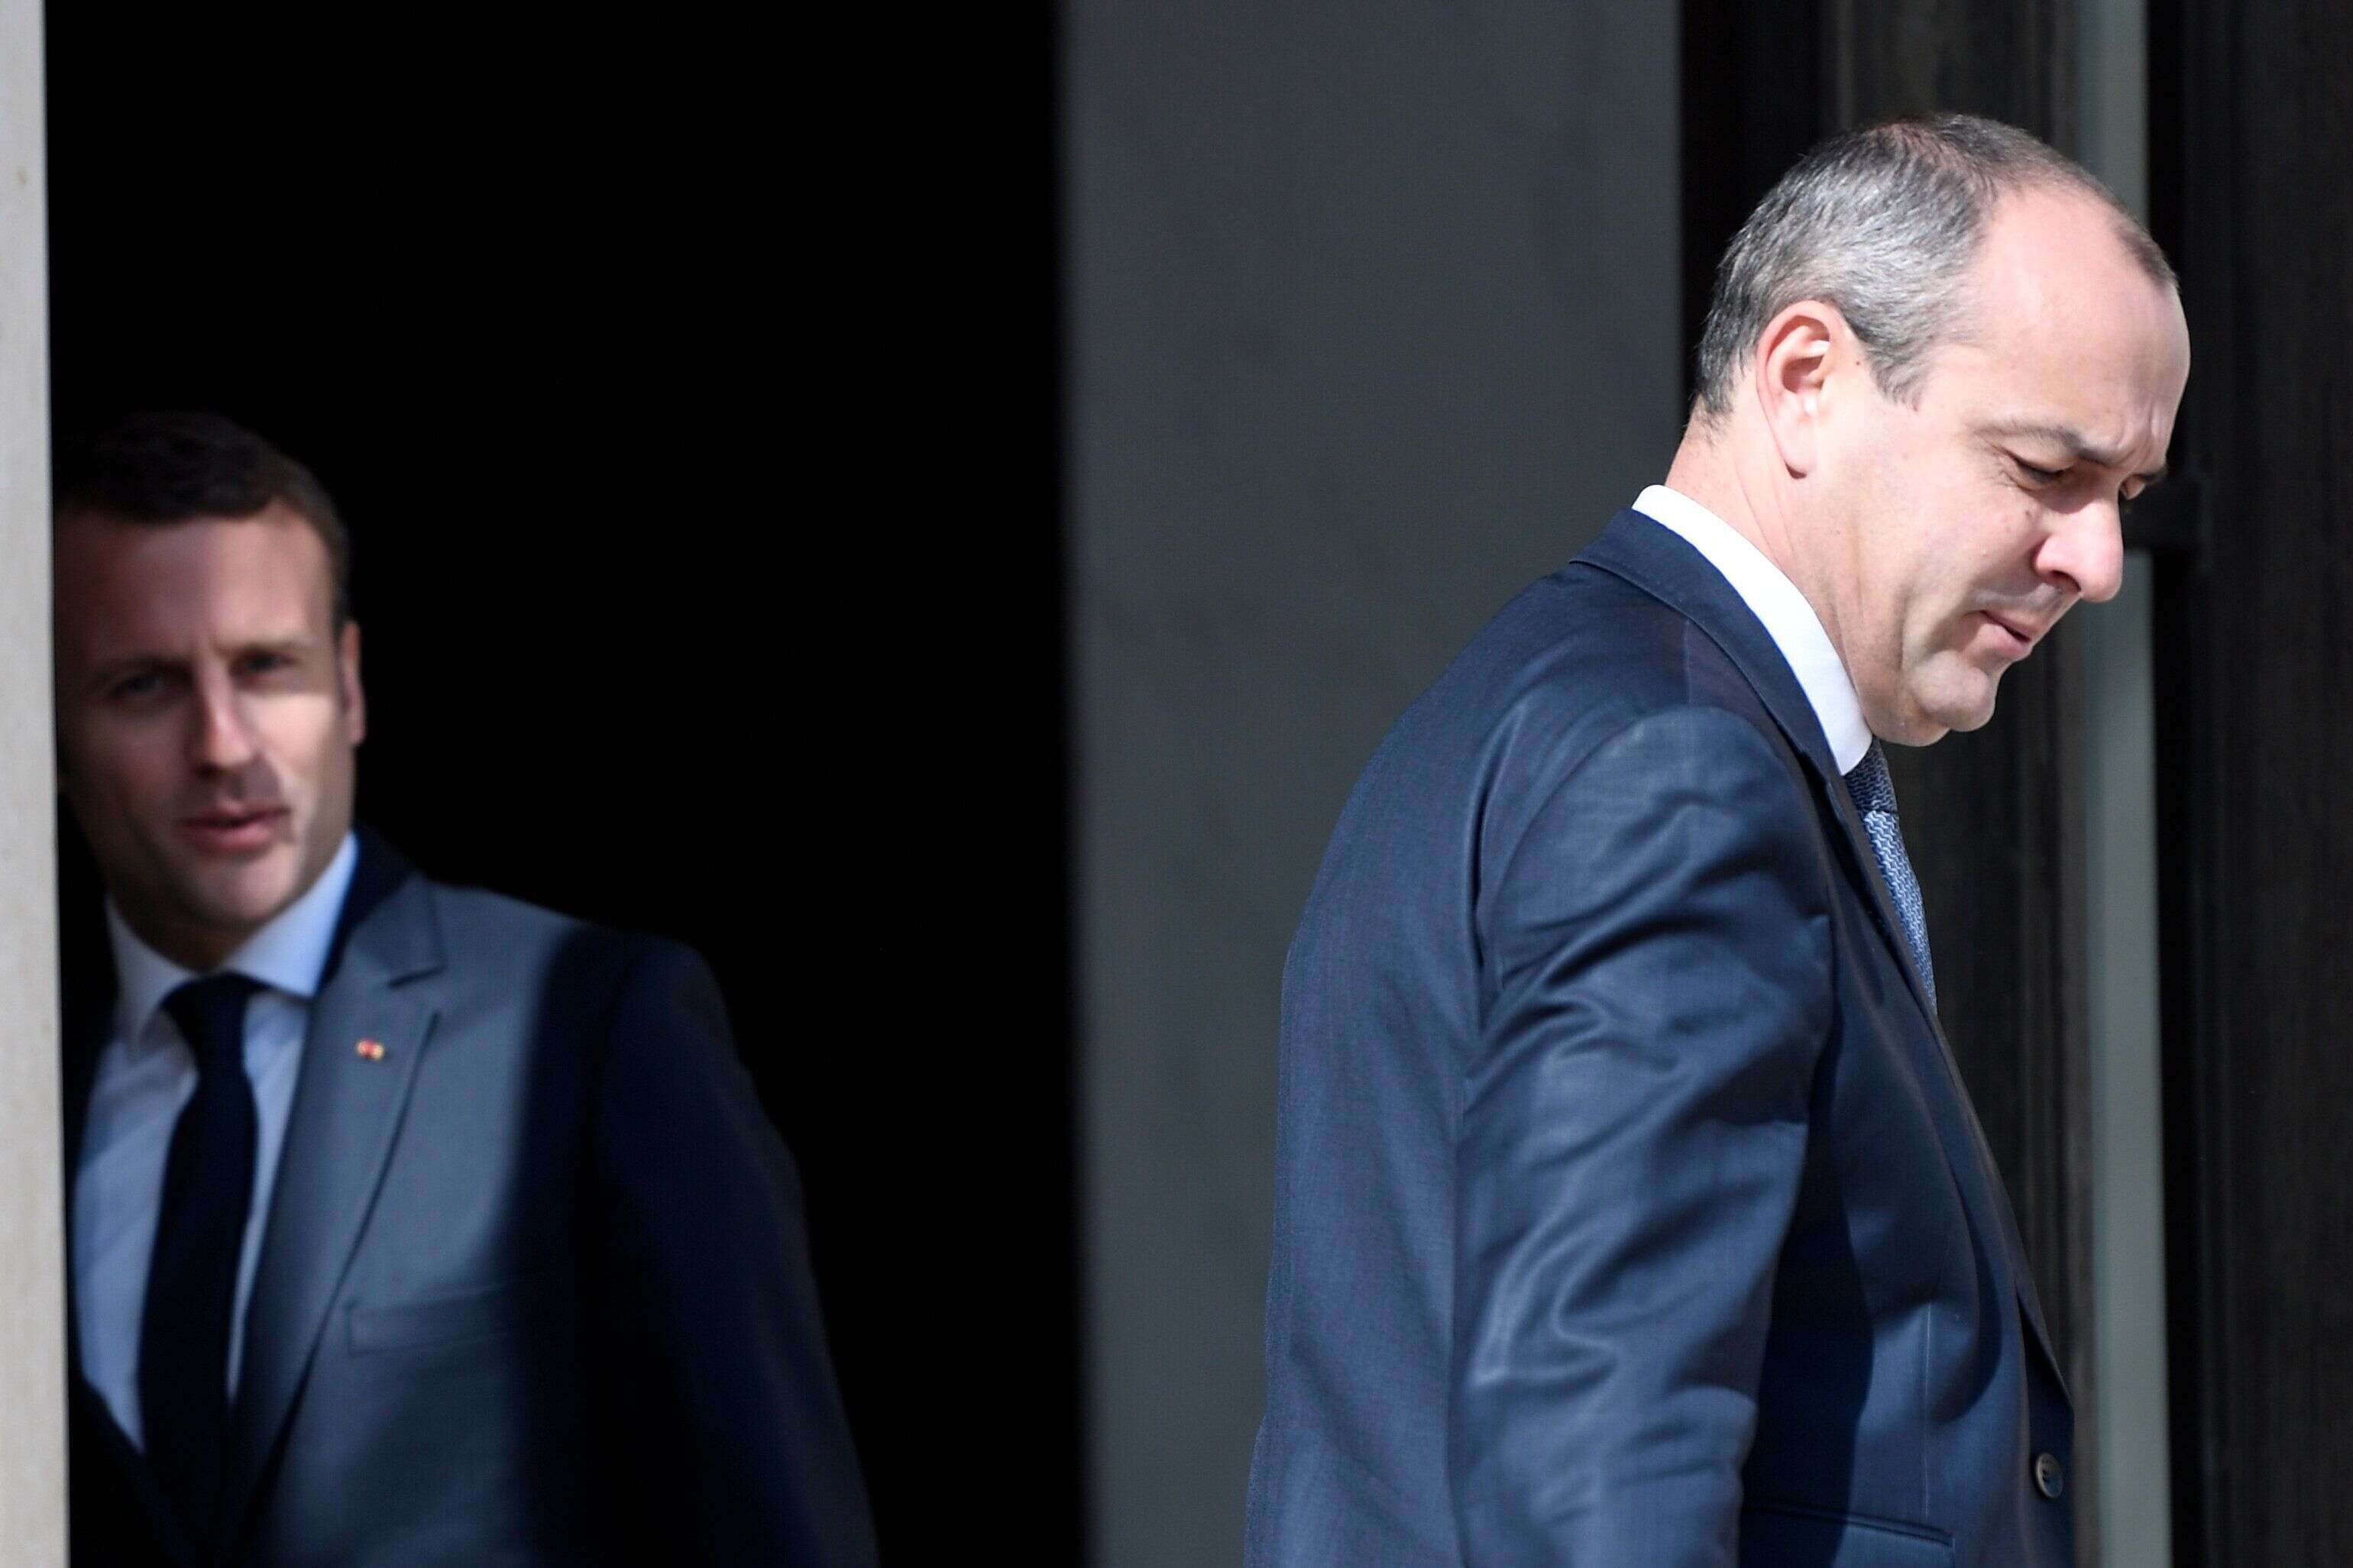 Le président Emmanuel Macron s'entretenant avec Laurent Berger (à droite), secrétaire général de la Confédération démocratique du travail (CFDT), à son arrivée au Palais présidentiel de l'Élysée à Paris le 23 mai 2017.